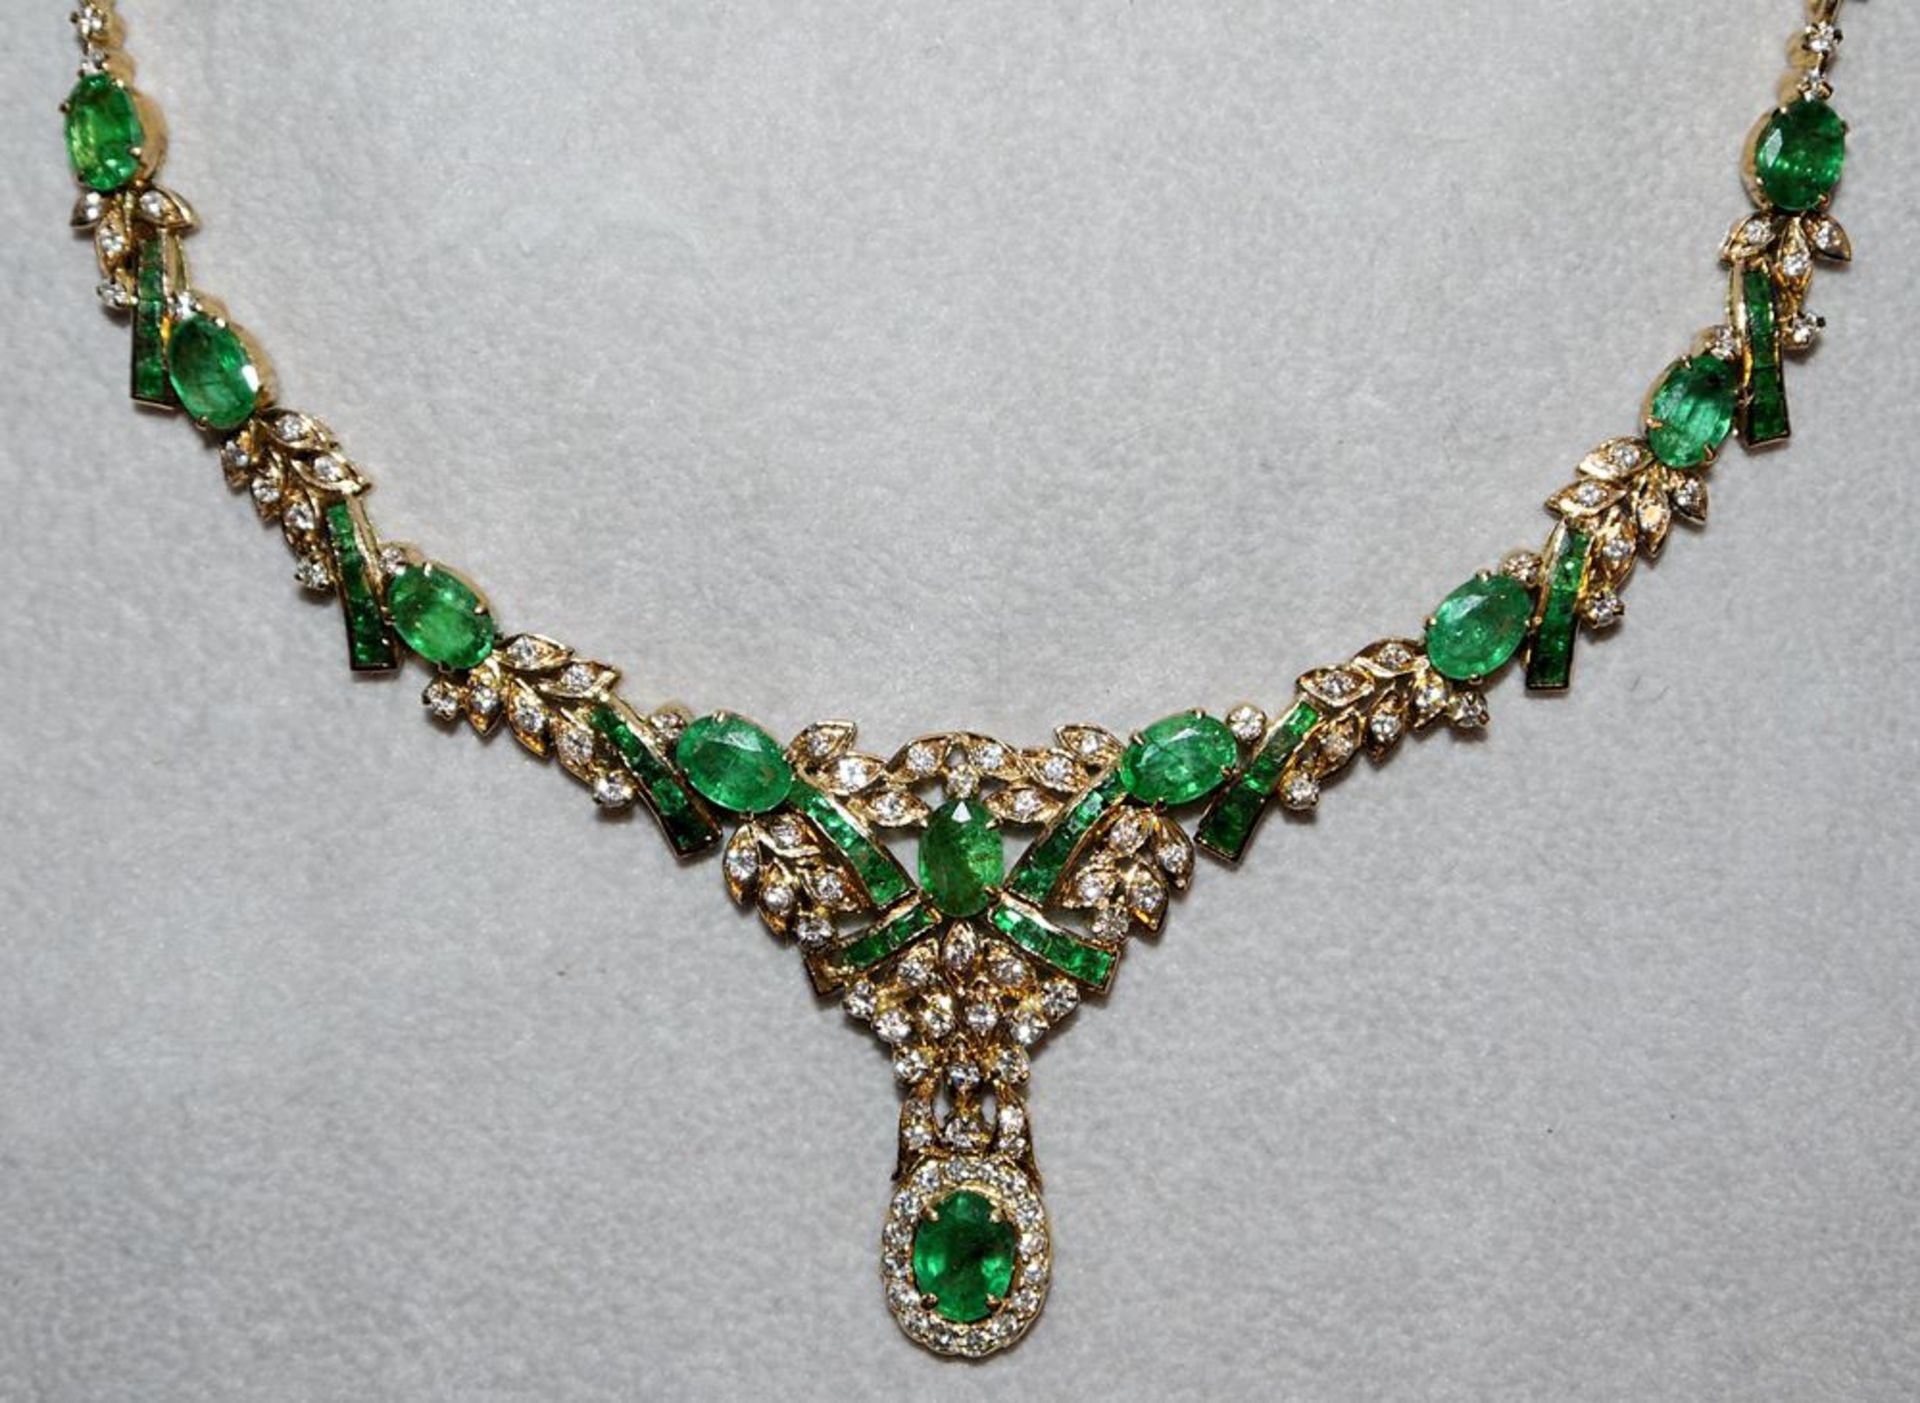 Prächtiges Smaragd-Collier mit Brillanten und dazu passende Ohrhänger, Gold, Friedrich Binder, Möns - Image 2 of 3